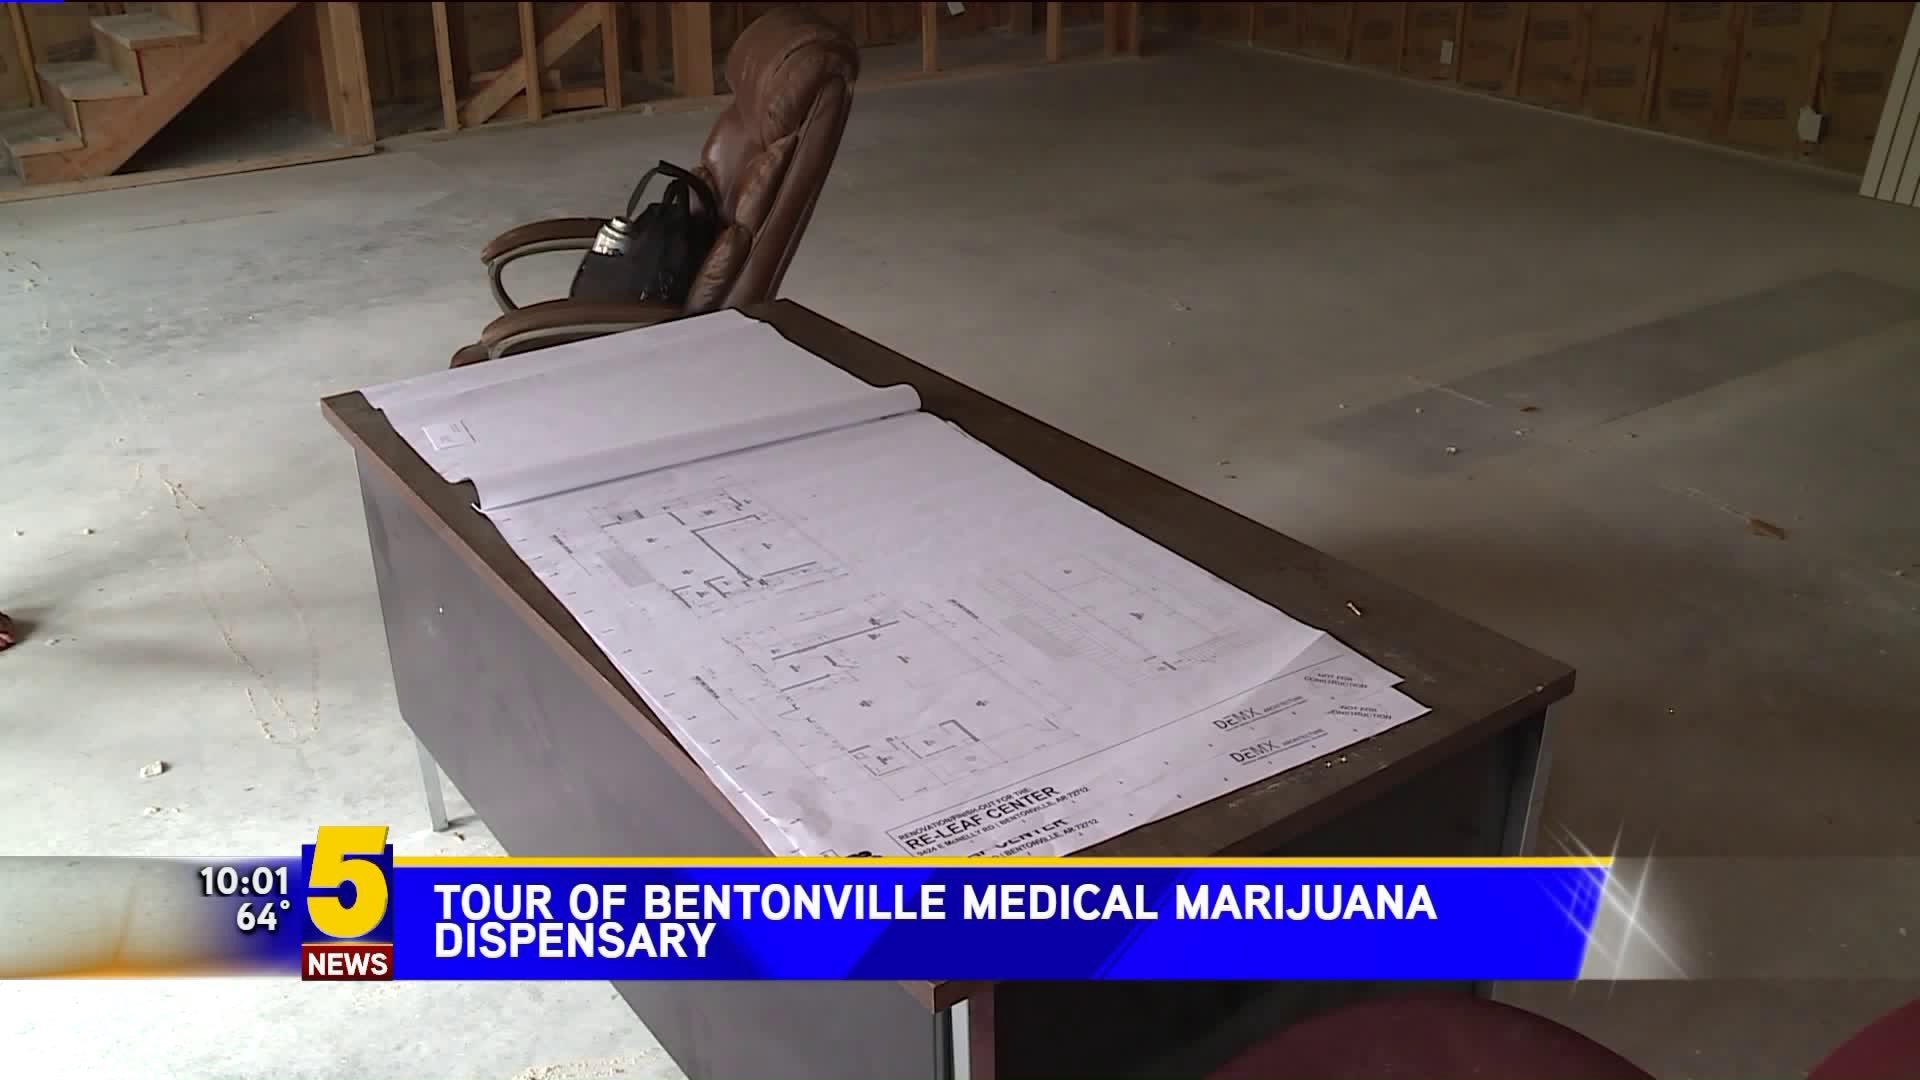 Tour of Bentonville Medical Marijuana Dispensary